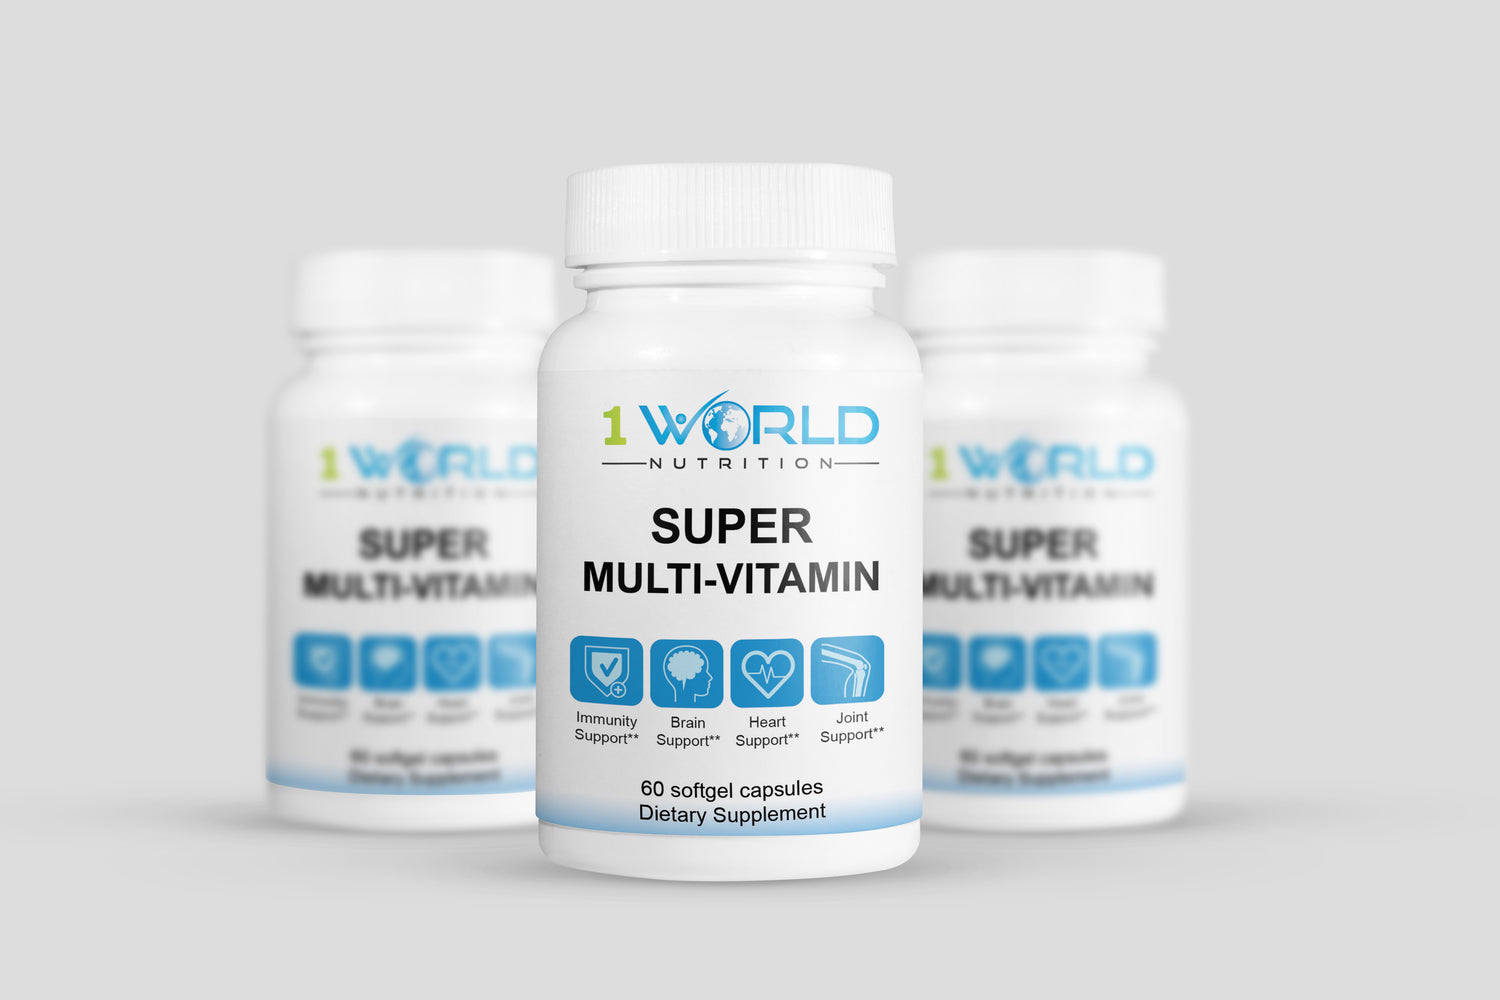 Super multi-vitamin for 1 World Nutrition